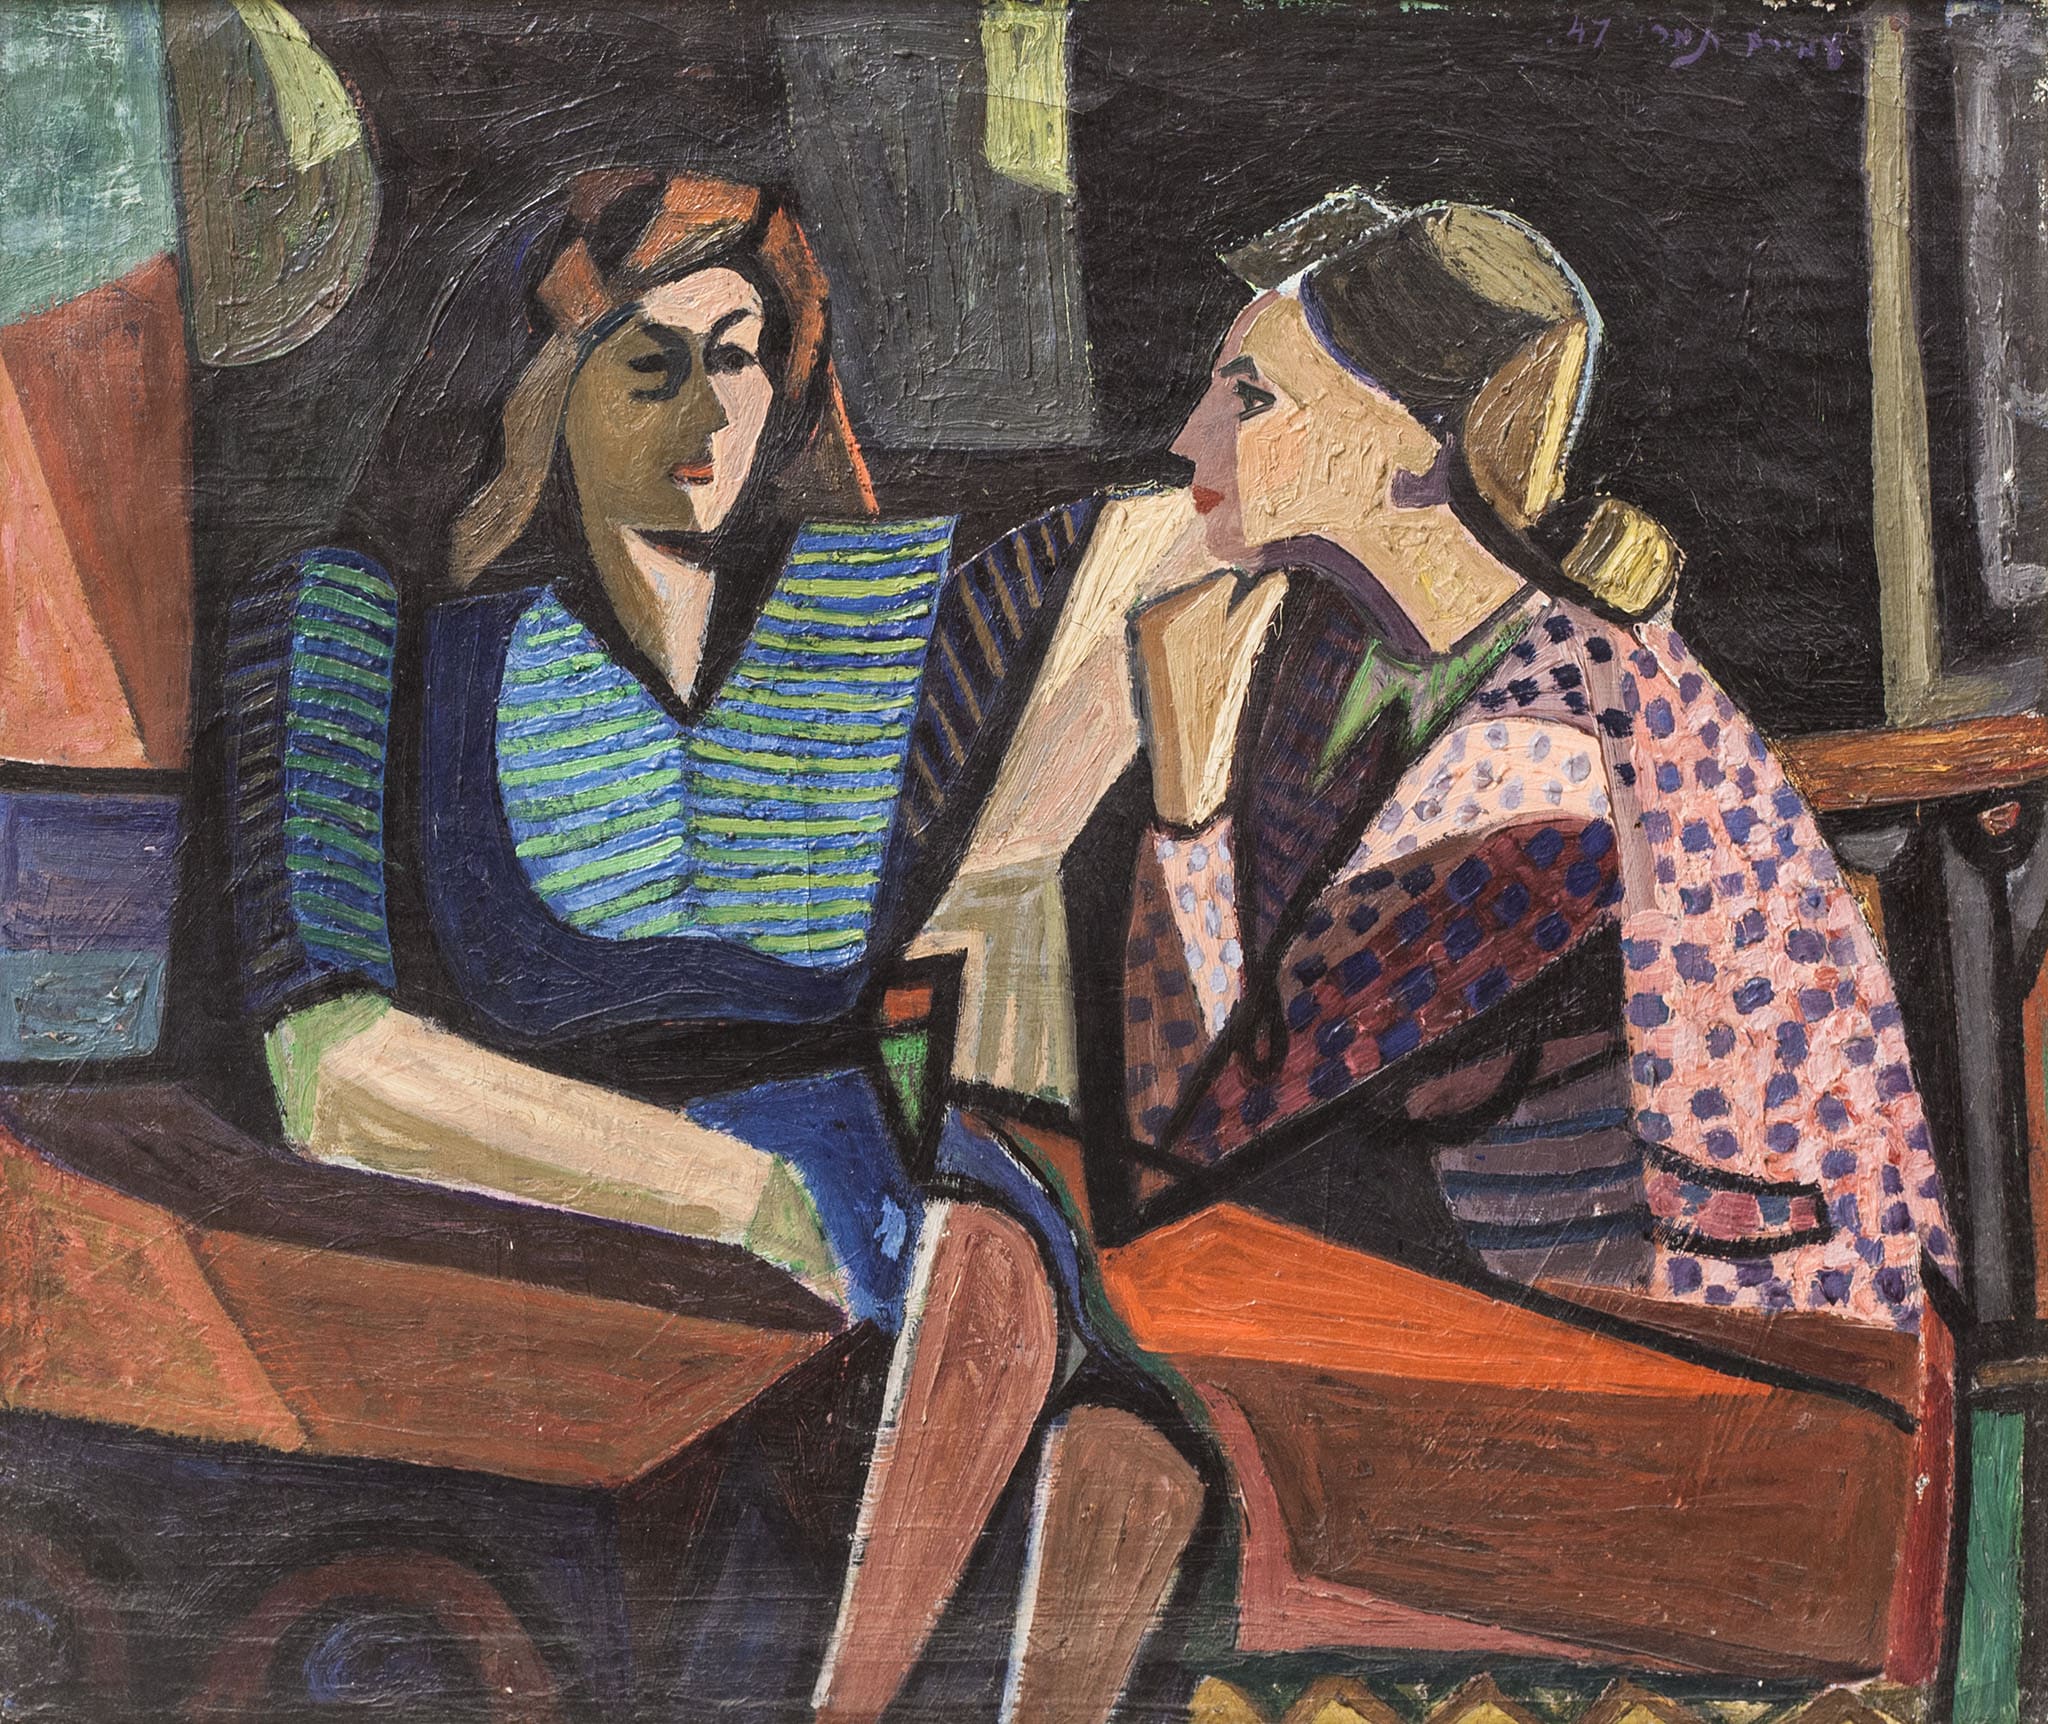 עמירם תמרי, "שיחת נשים", 1947, שמן על בד, 53x45 ס"מ